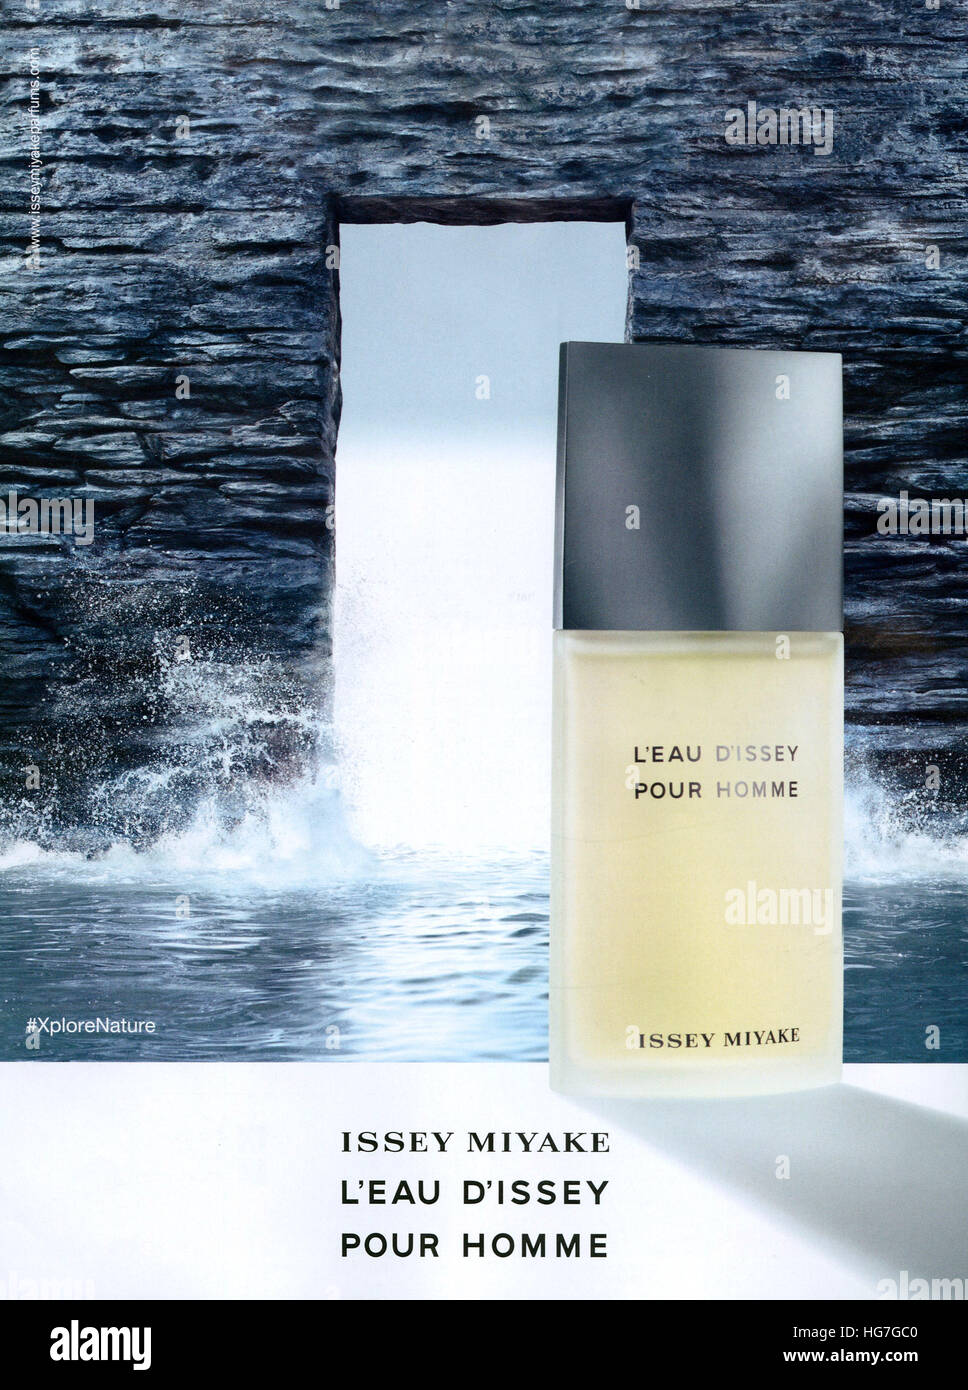 2010s UK Issey Miyake Magazine Advert Stock Photo